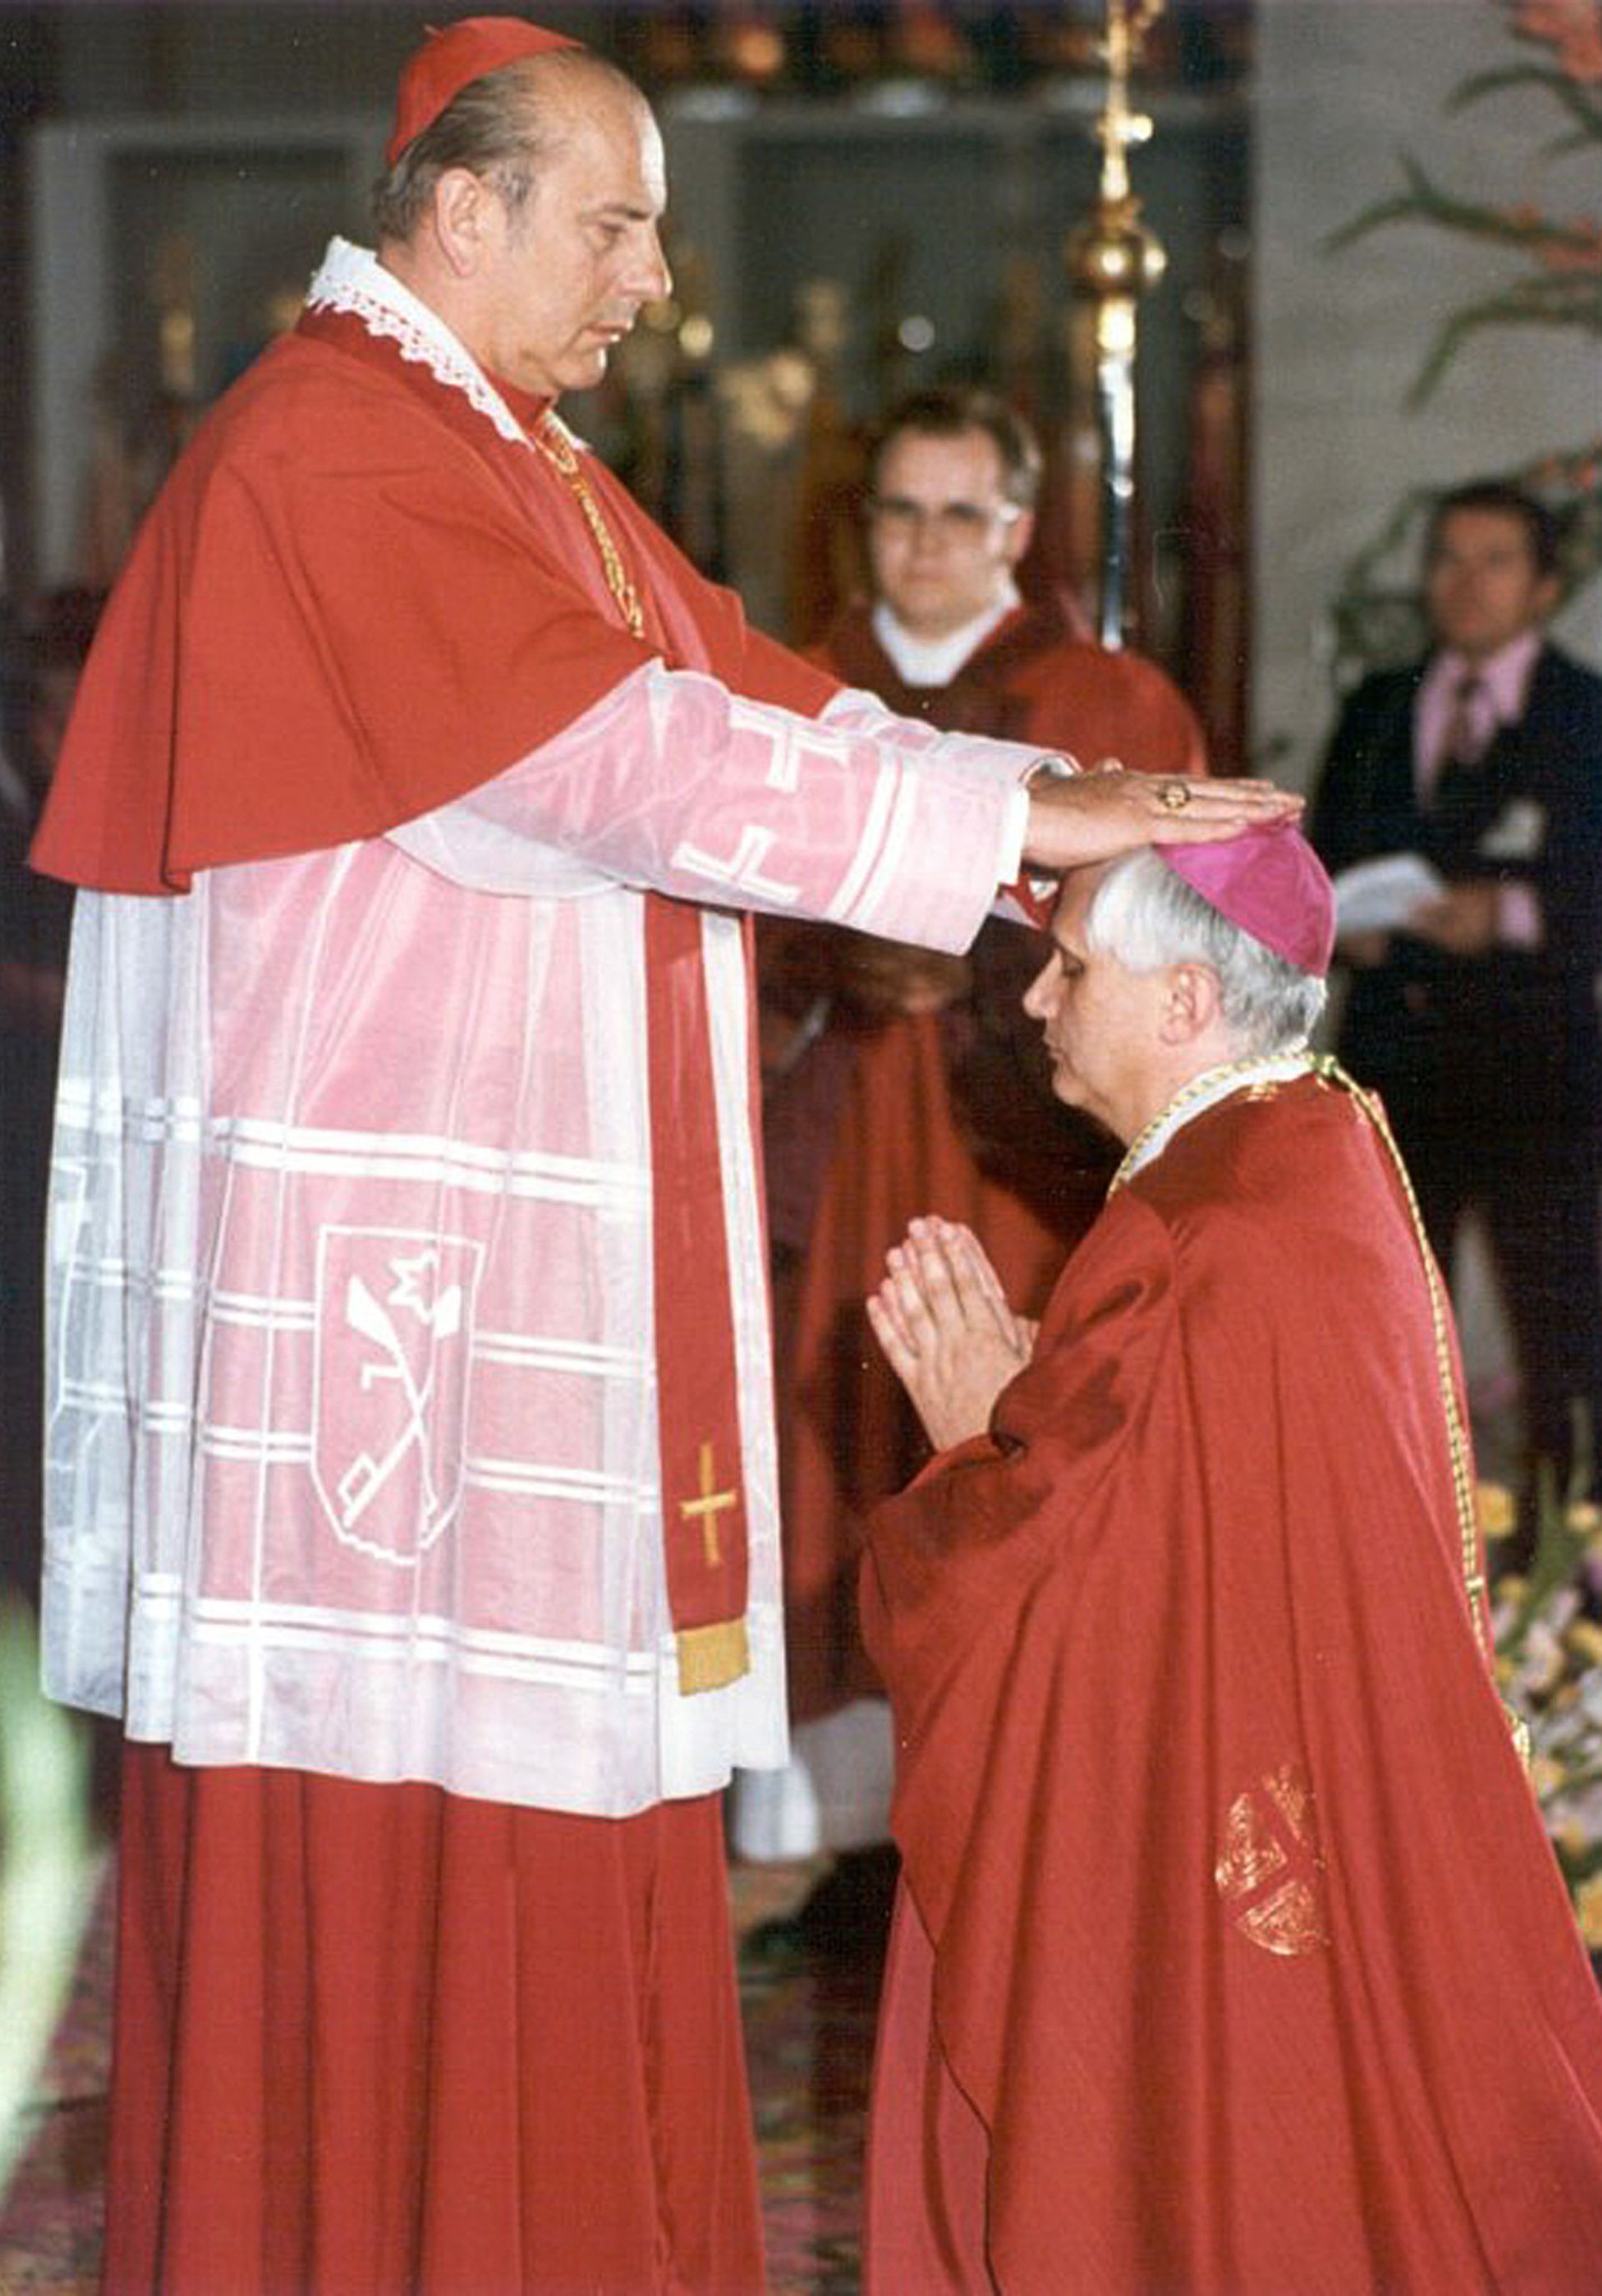 Joseph Ratzinger ordonné archevêque de Munich par l'archevêque de Berlin le 28 mai 1977